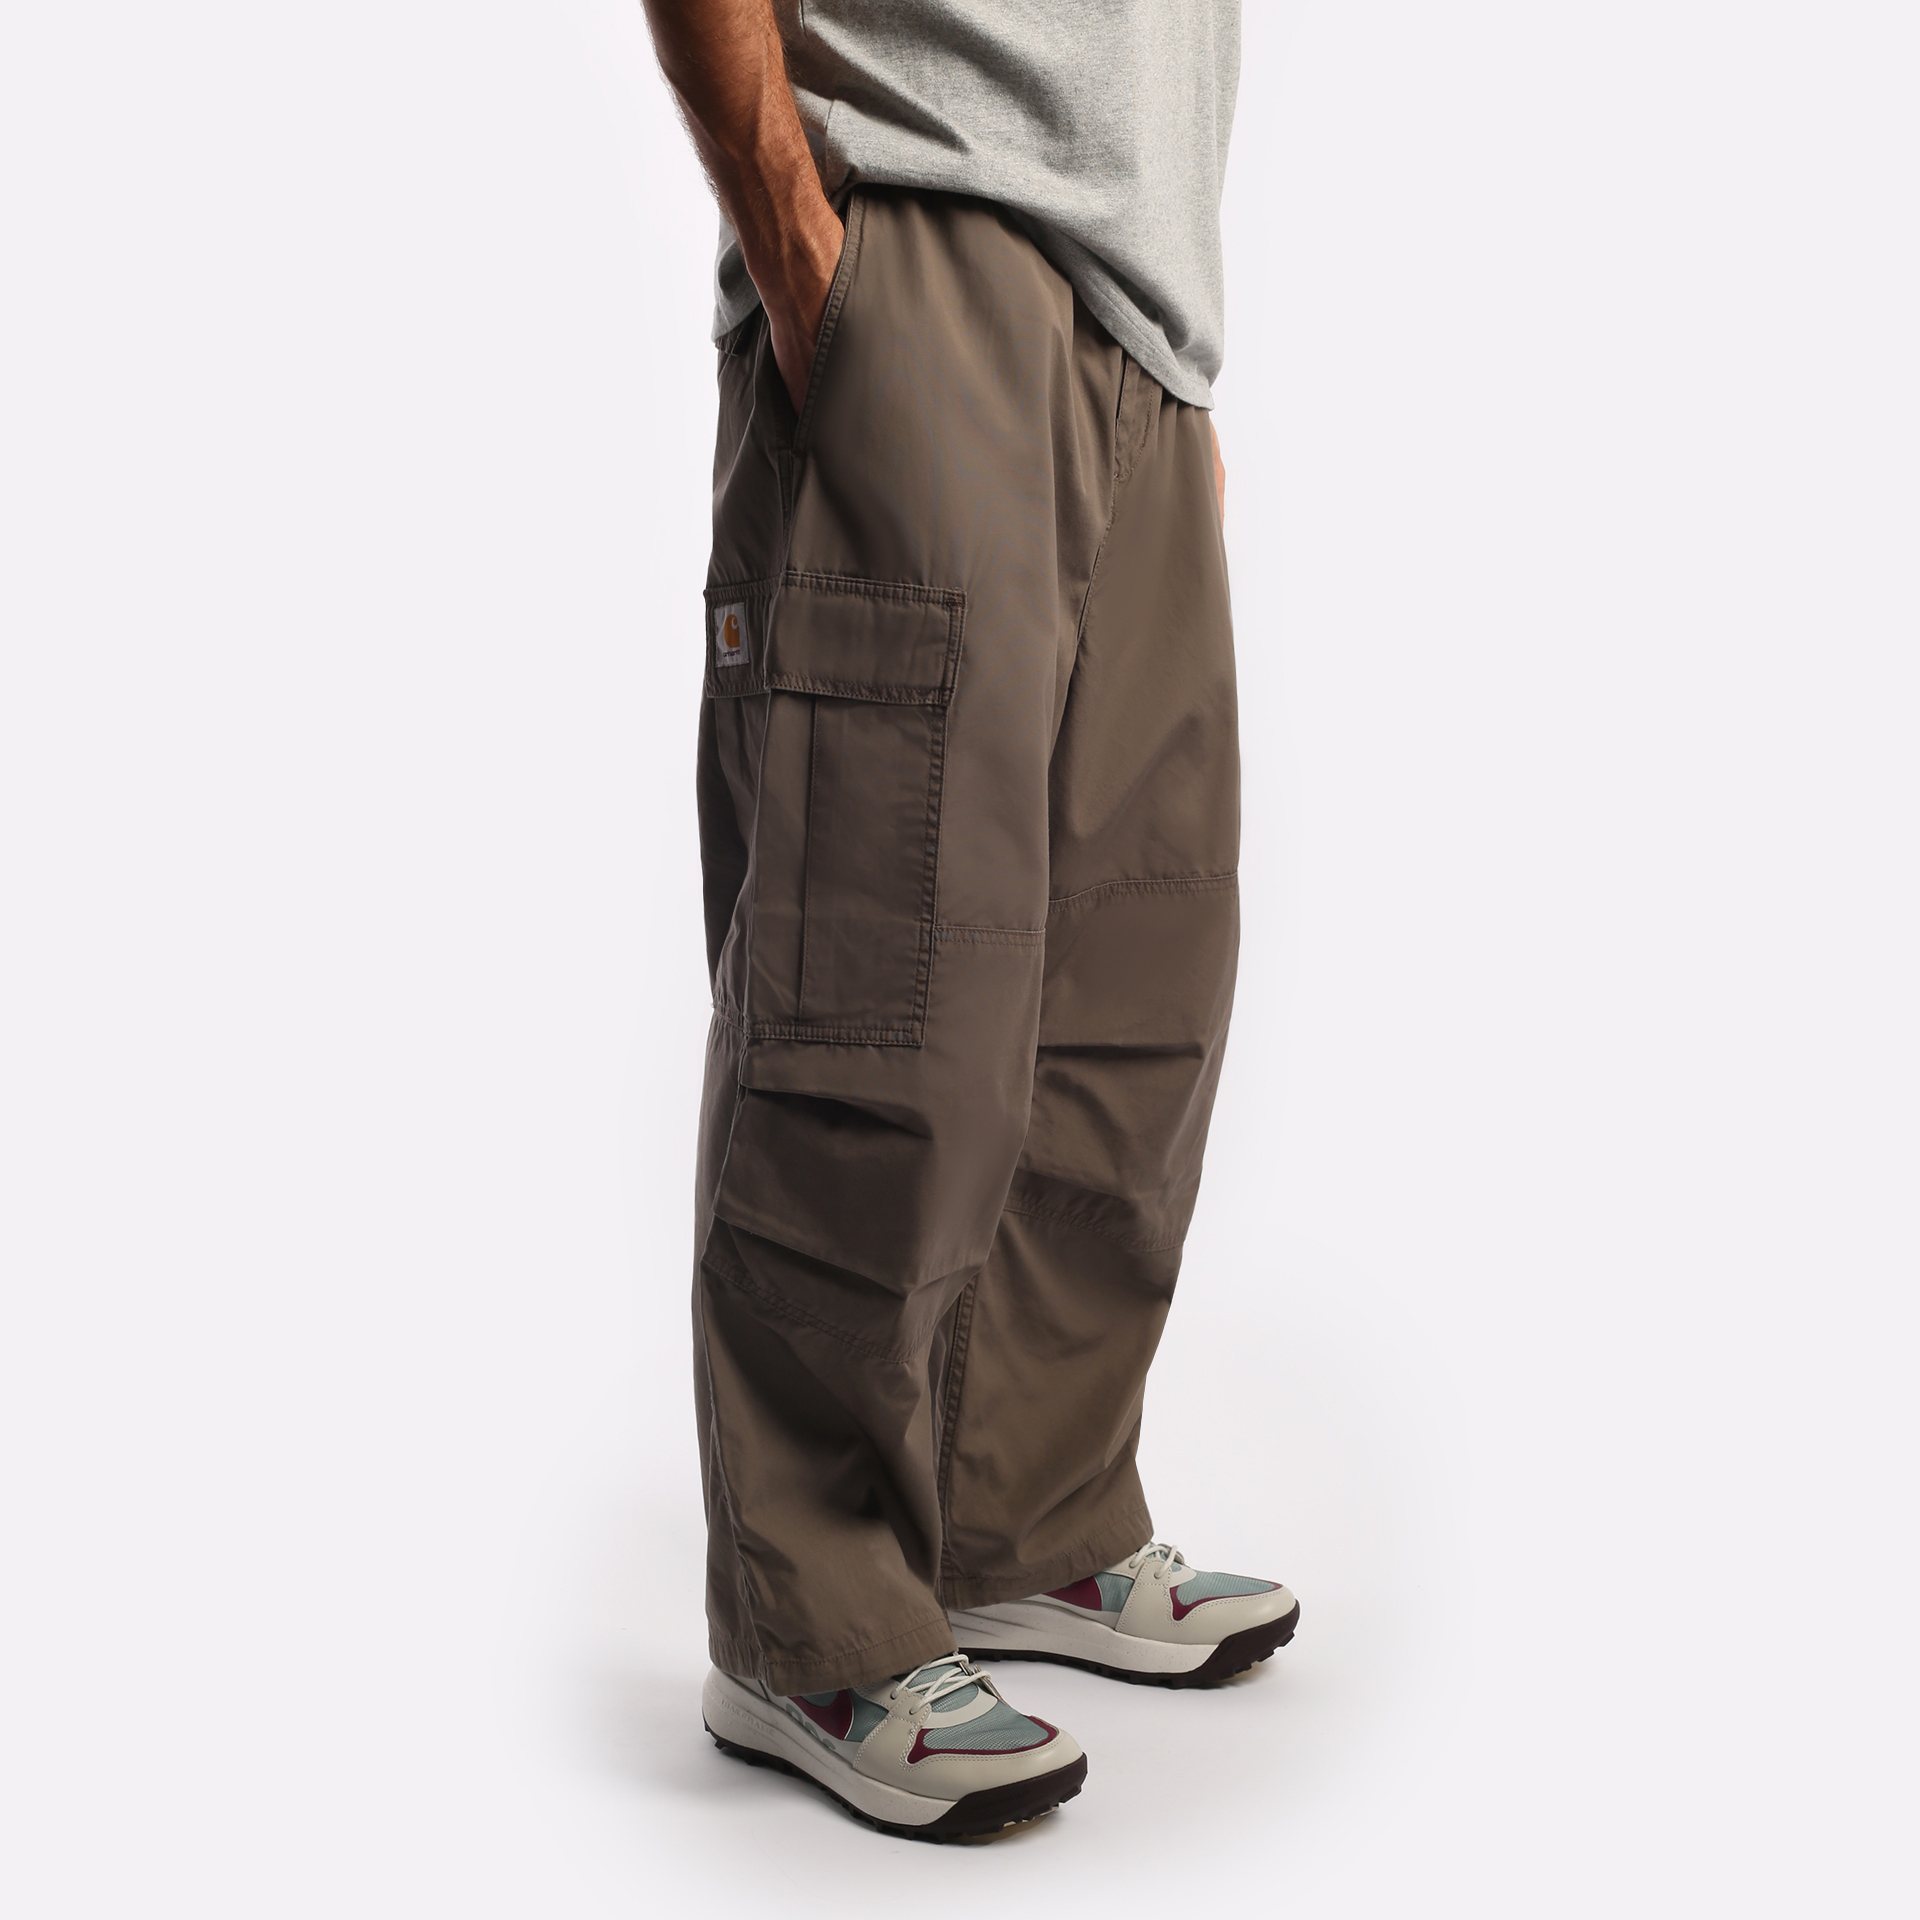 мужские брюки Carhartt WIP Jet  (I031520-barista)  - цена, описание, фото 3